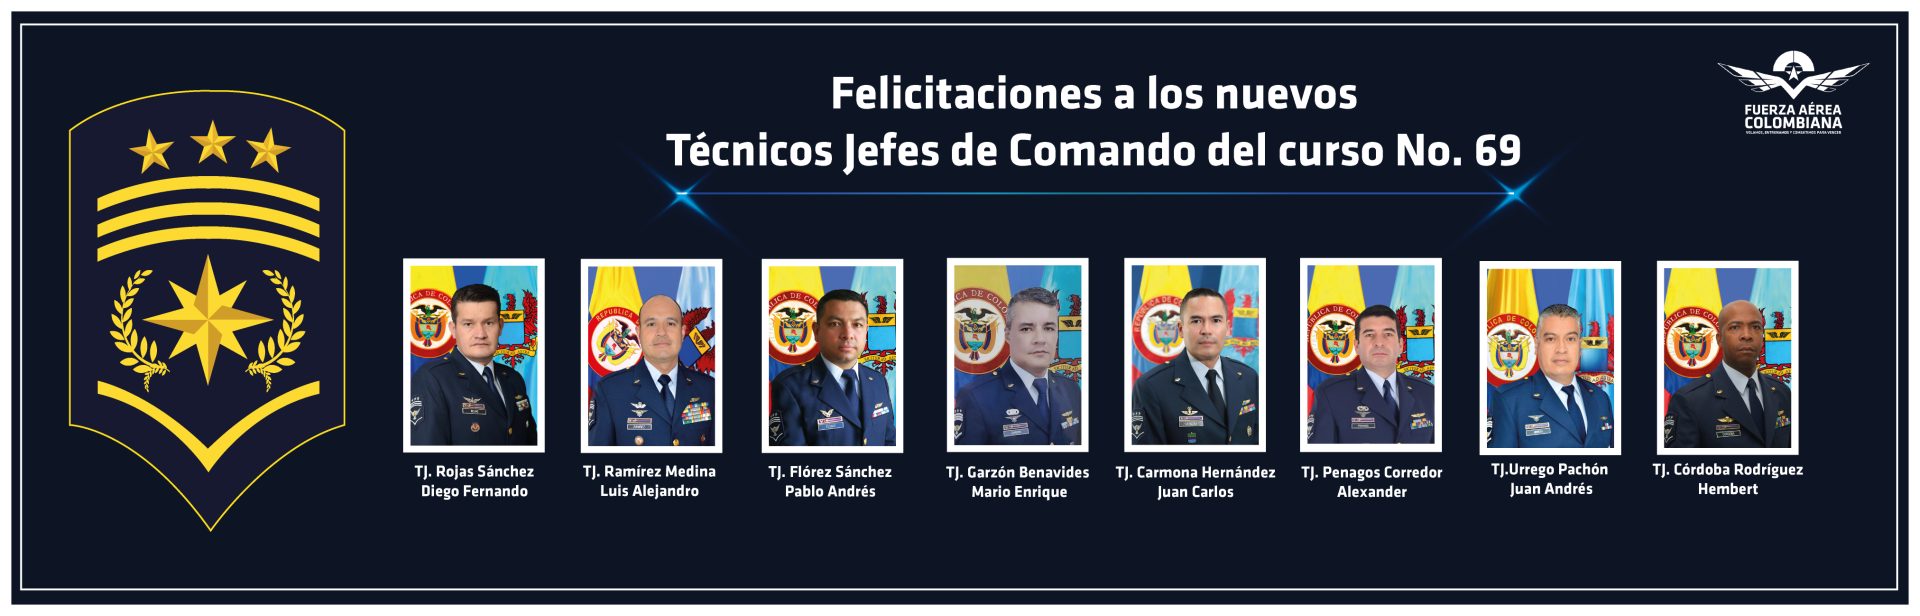 Felicitaciones a los nuevos Técnicos Jefes de Comando 